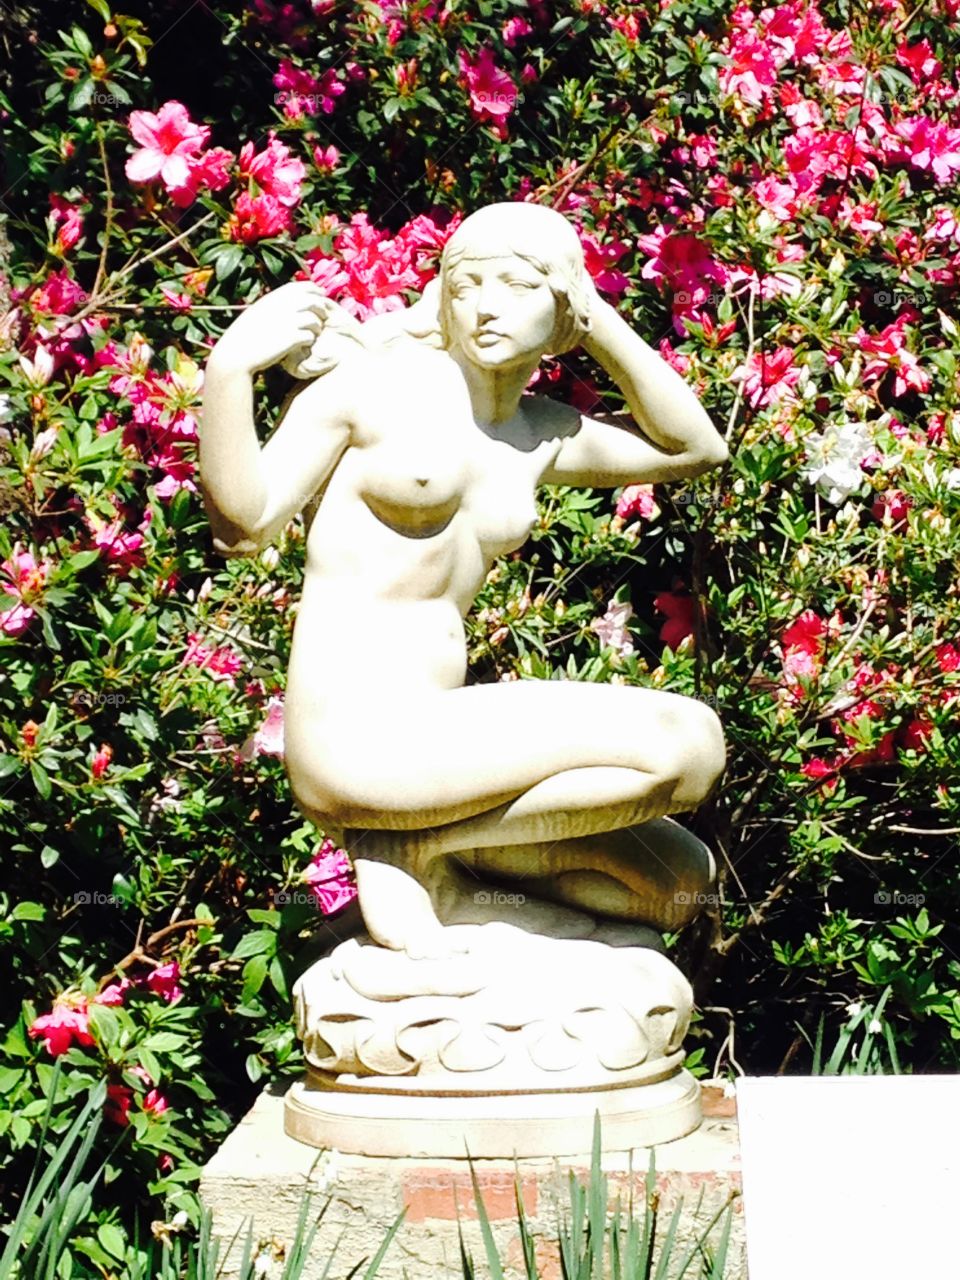 Crouching woman, pink azaleas